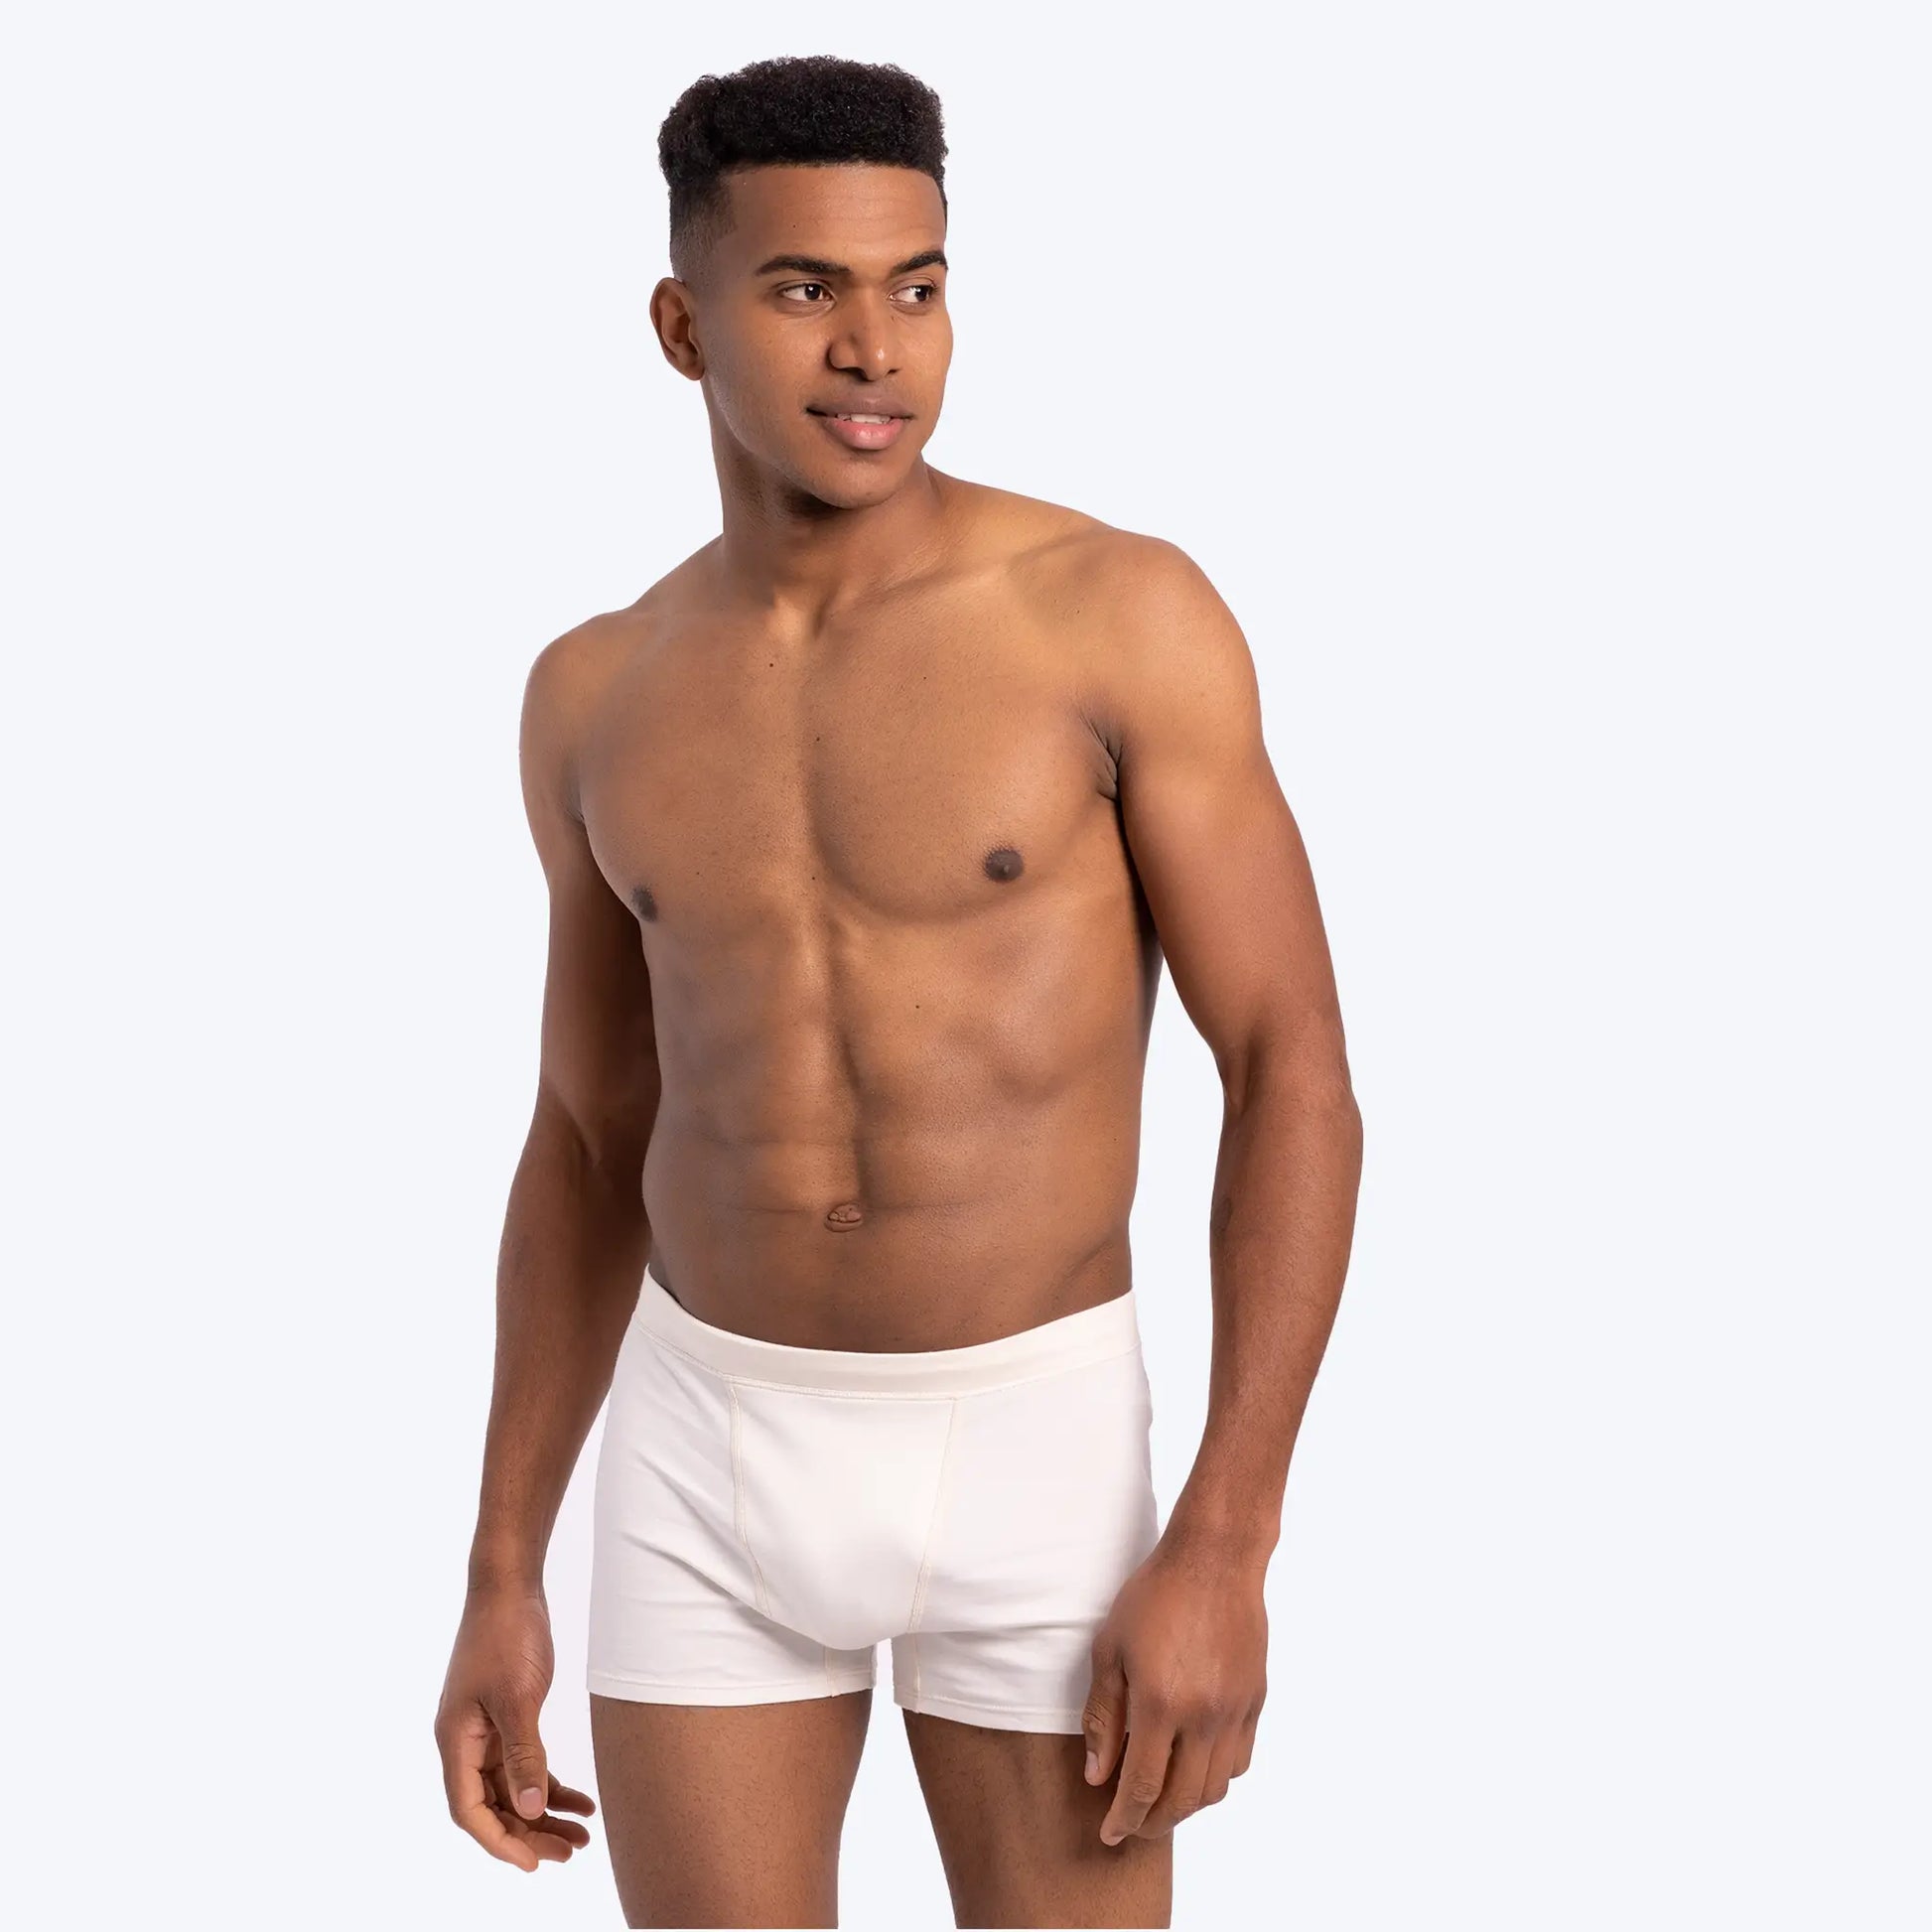 Cotton boxer shorts - White